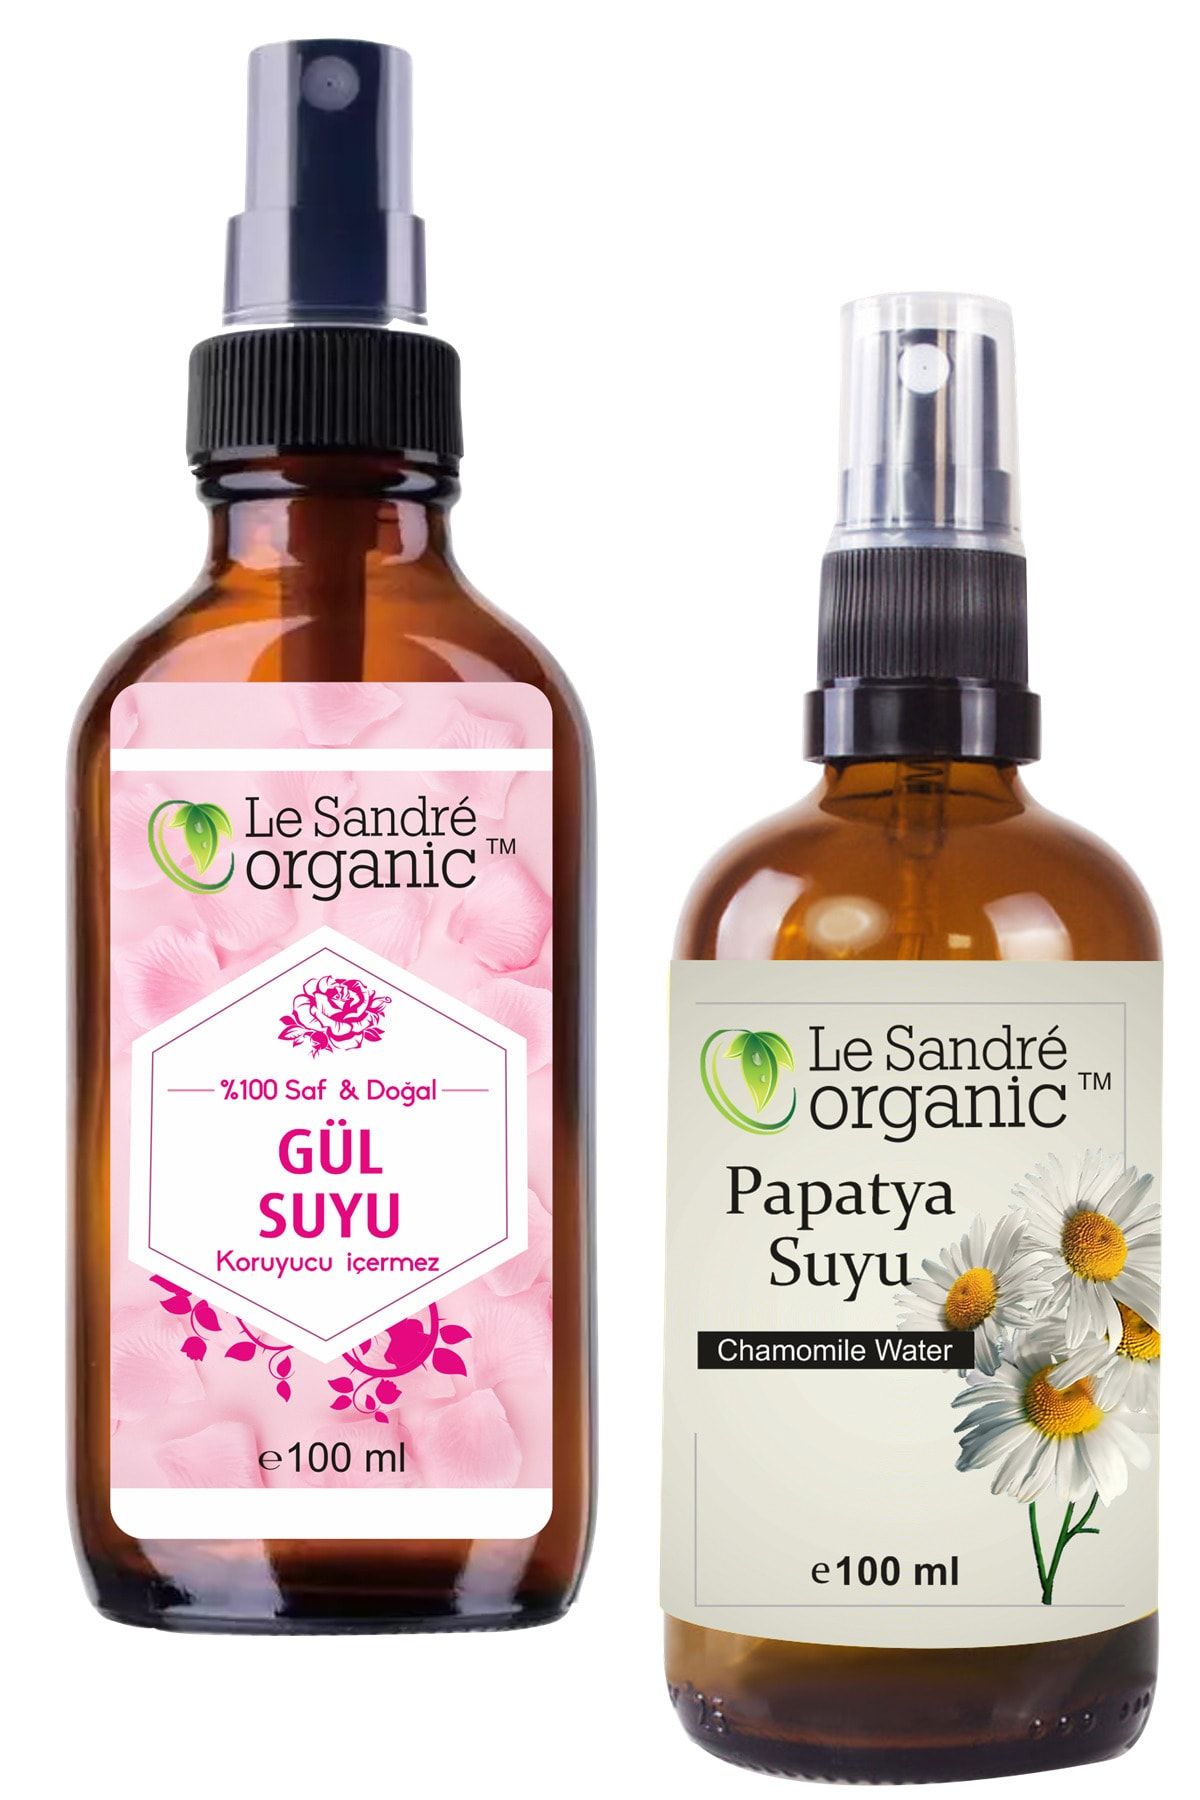 Le Sandre Organic Papatya Suyu 100 Ml & Gül Suyu 100 Ml